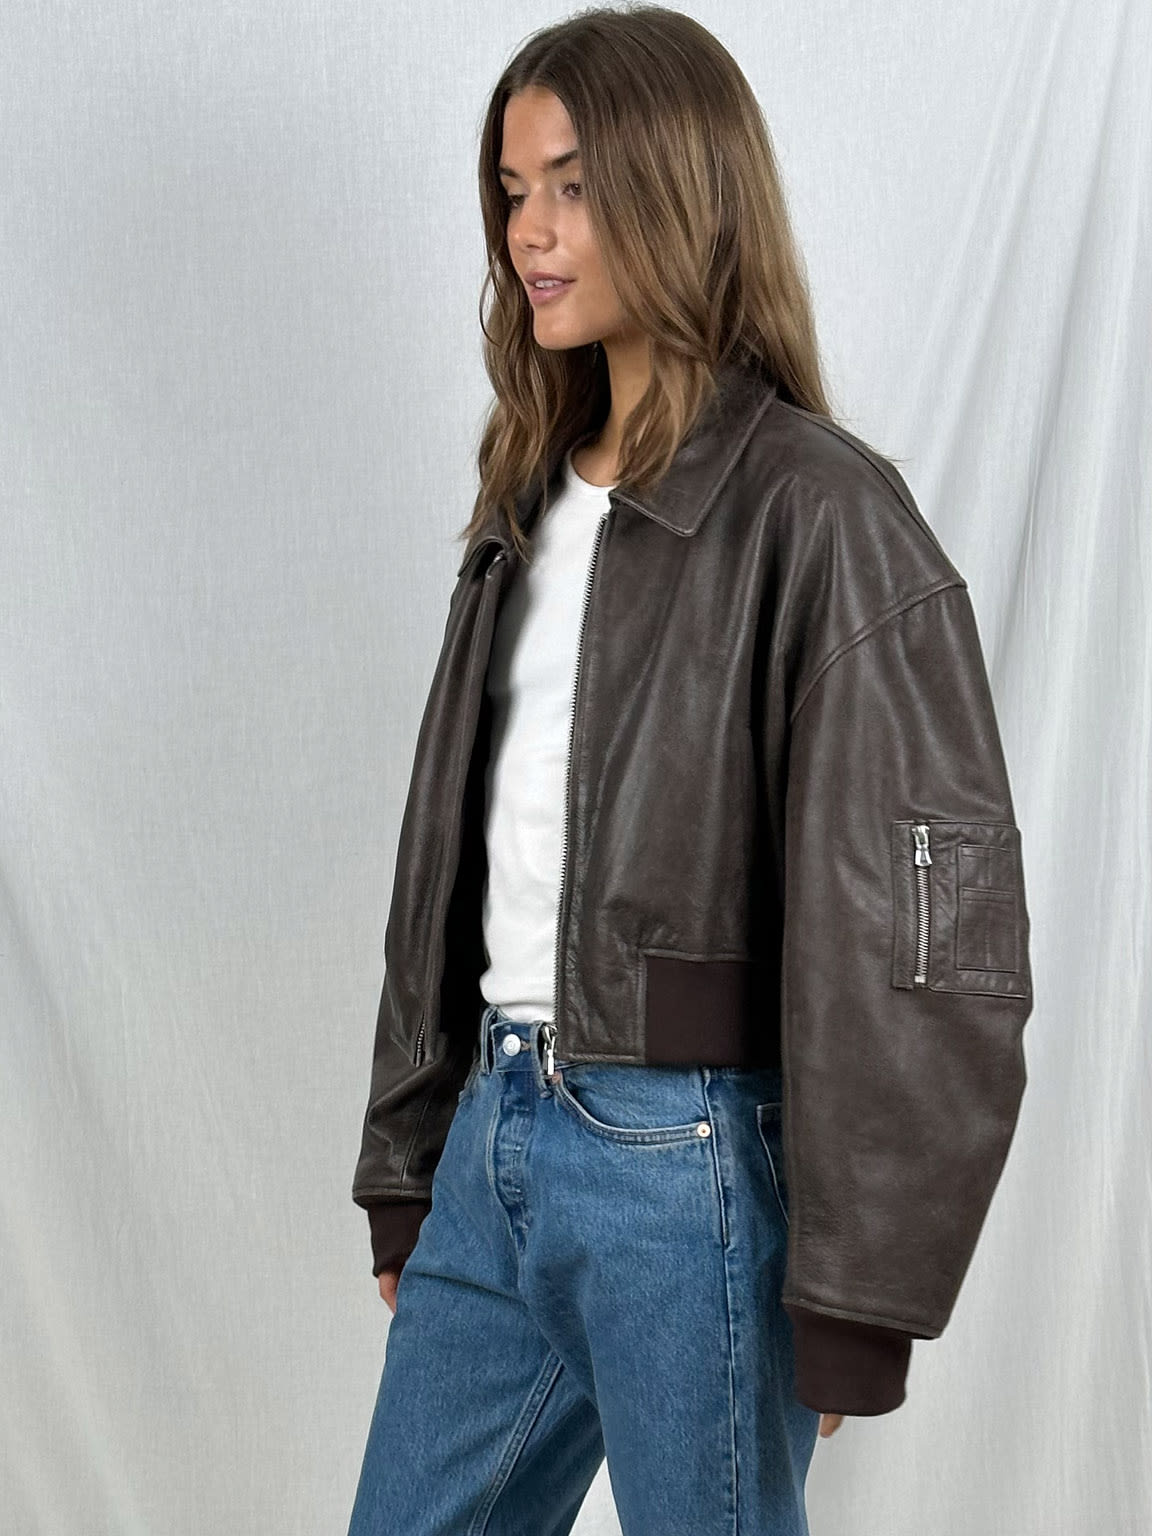 Amazon.com: Zontroldy Women Leather Sleeve Varsity Jacket Fashion Oversized  Baseball Bomber Jacket Streetwear Tops(0583-Black-S) : Clothing, Shoes &  Jewelry